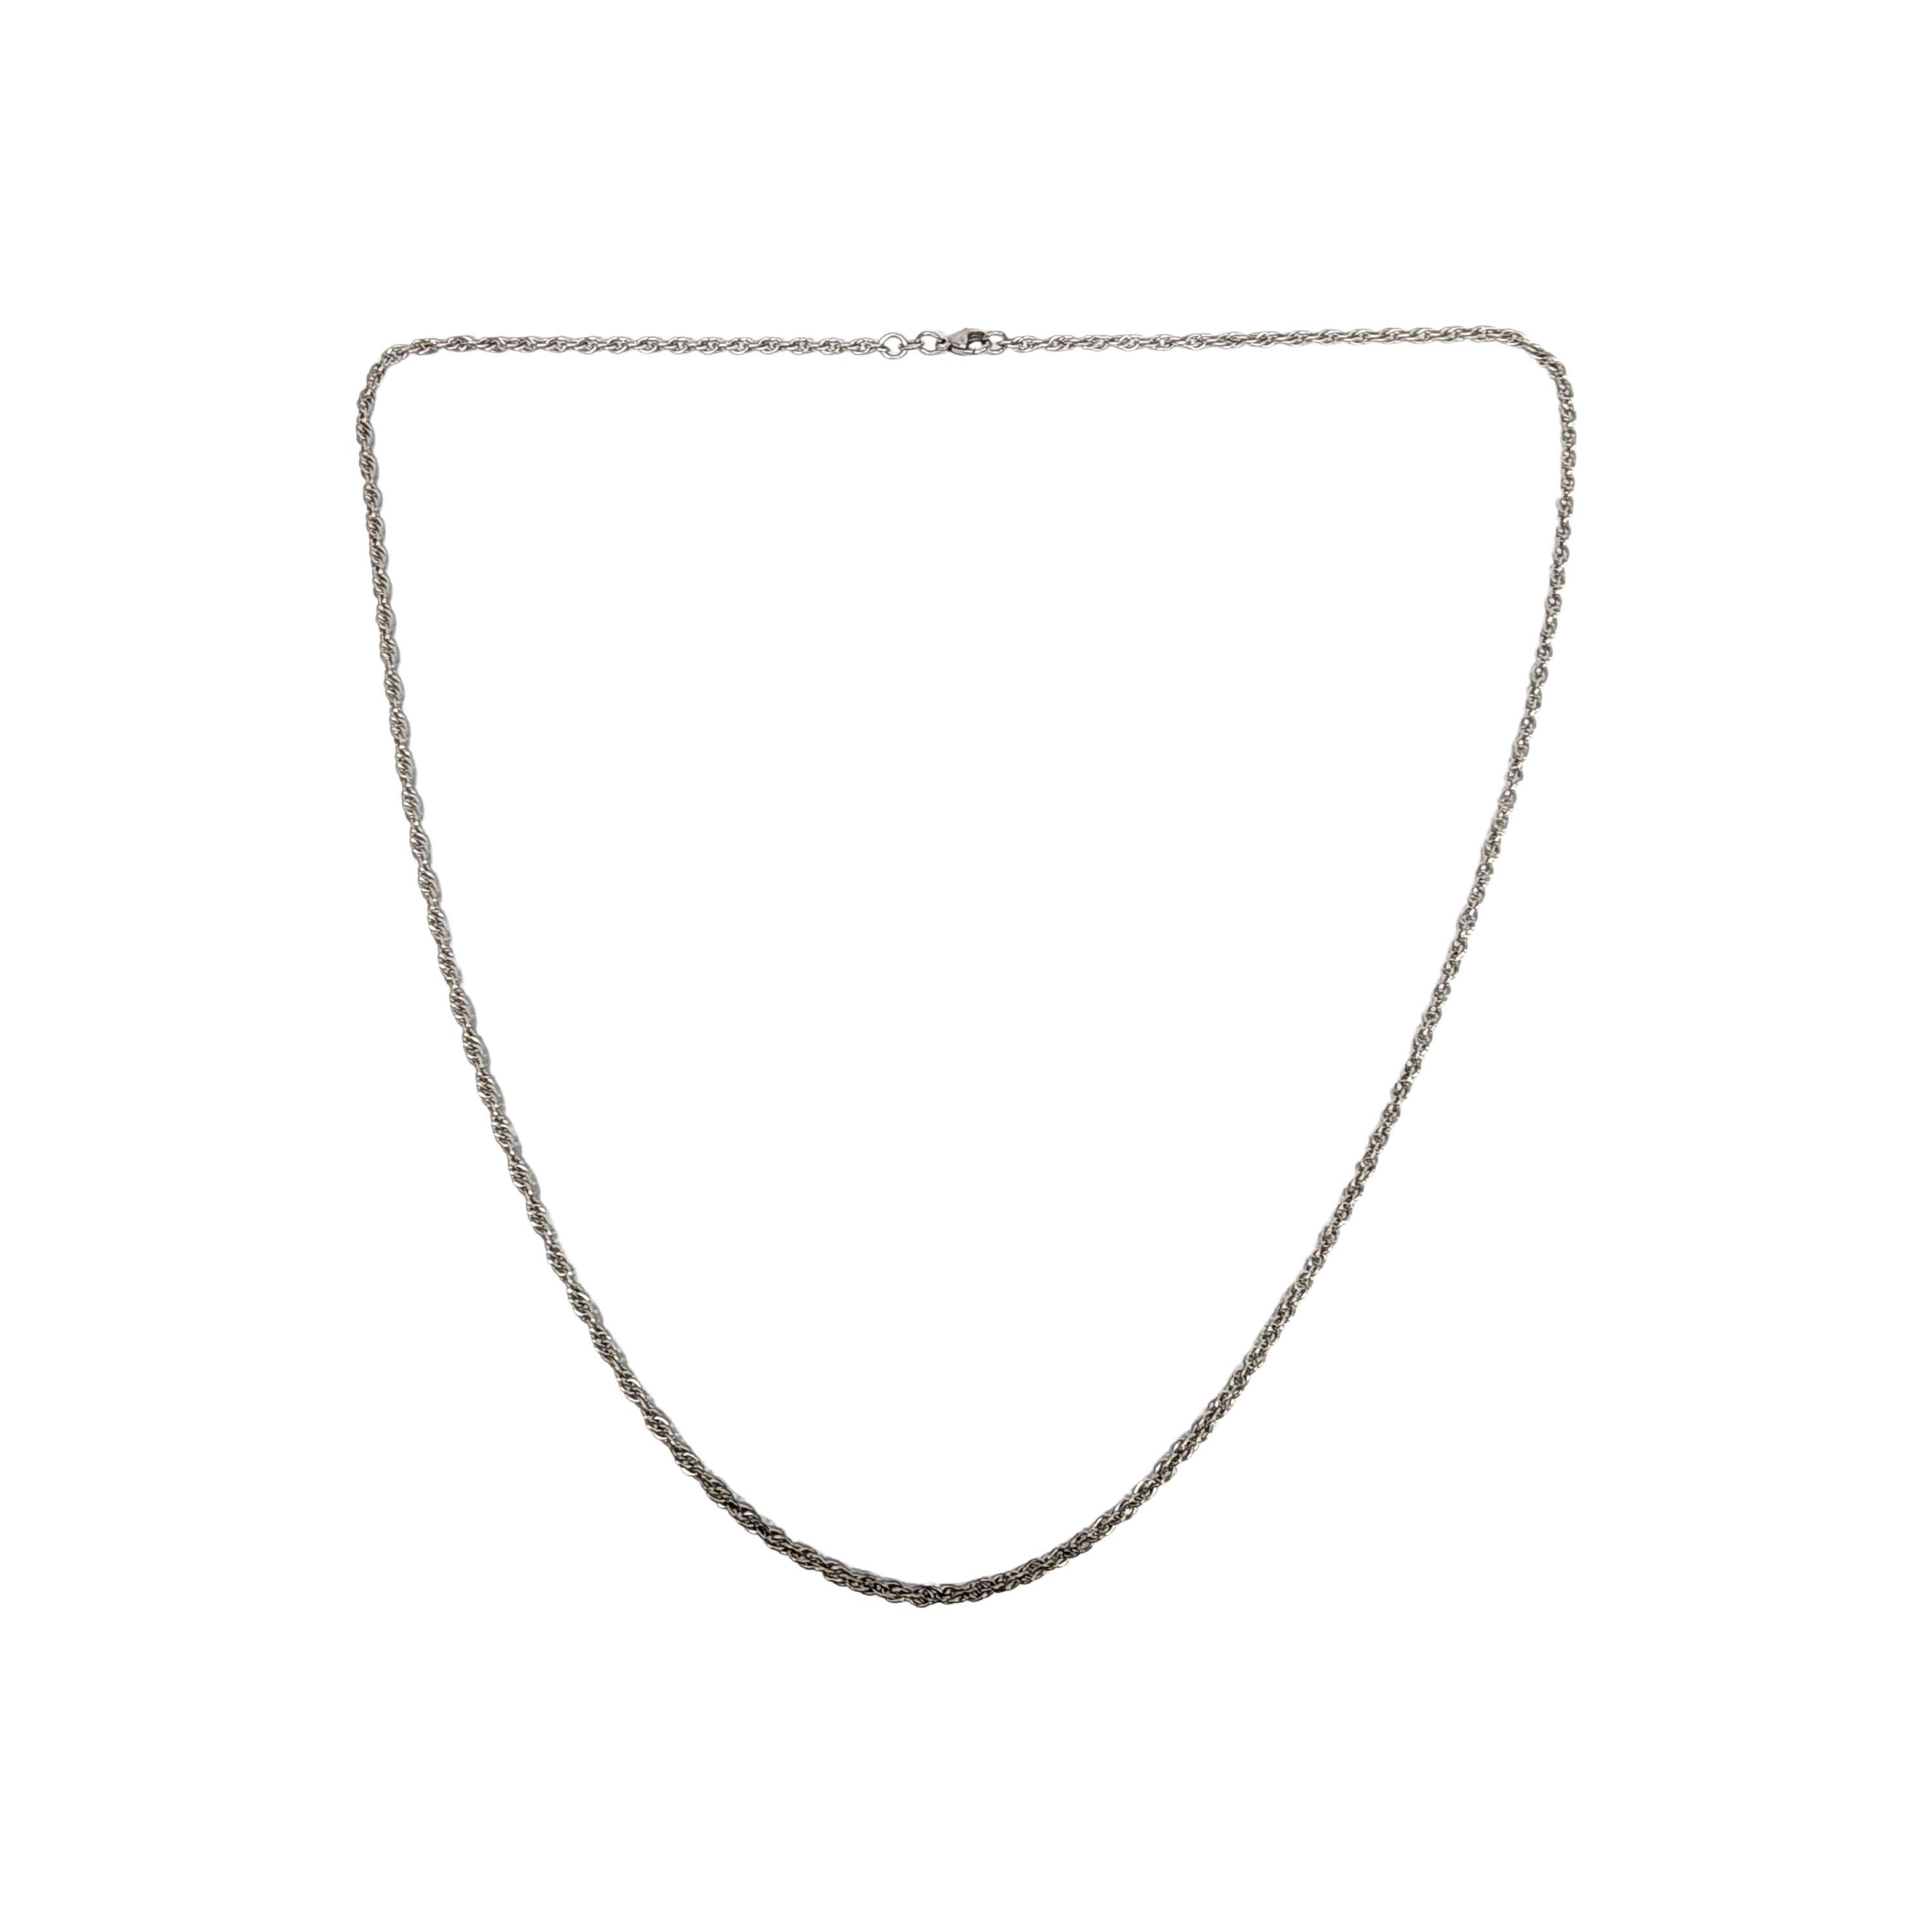 Halskette aus Sterlingsilber von James Avery.

Eine lange, gedrehte Kette des legendären Designers James Avery.

Wiegt ca. 15,7g, 10,1dwt

Maße: ca. 30